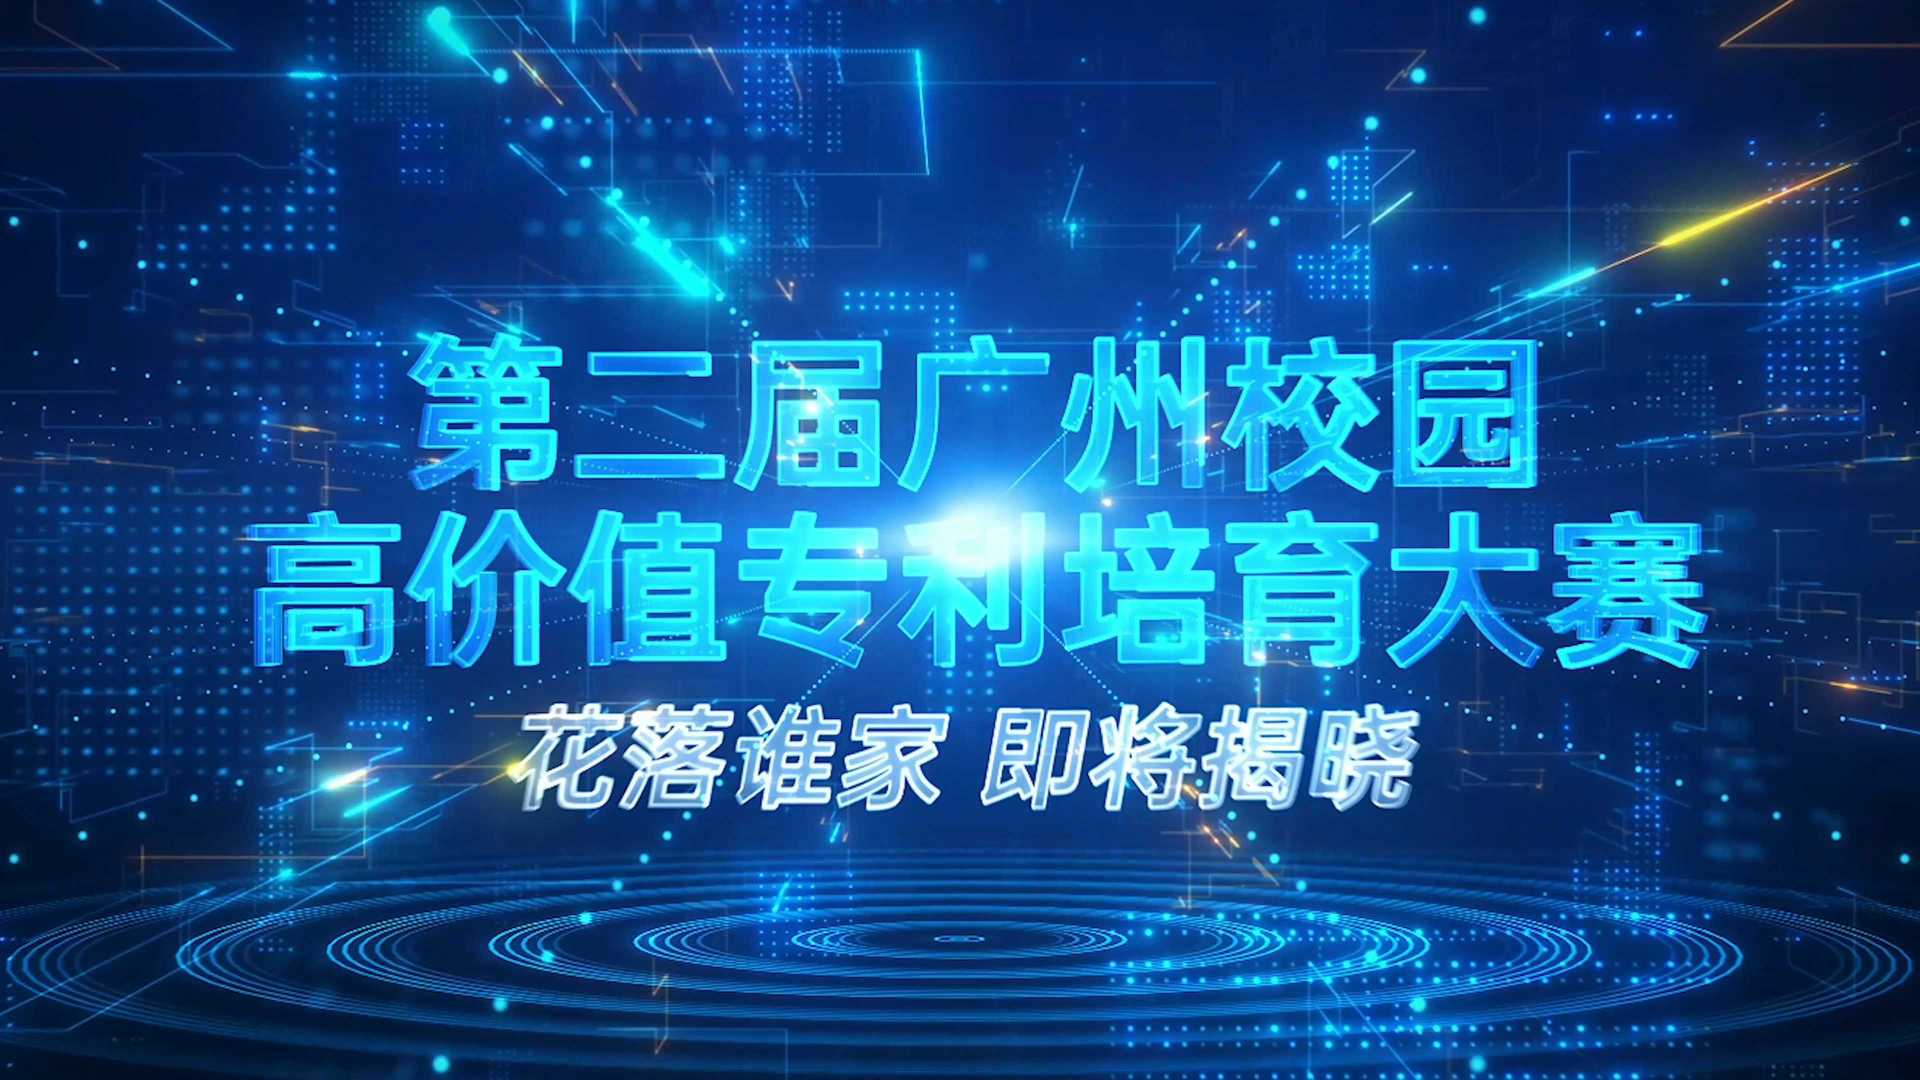 第二届广州校园高价值专利培育大赛 活动宣传片